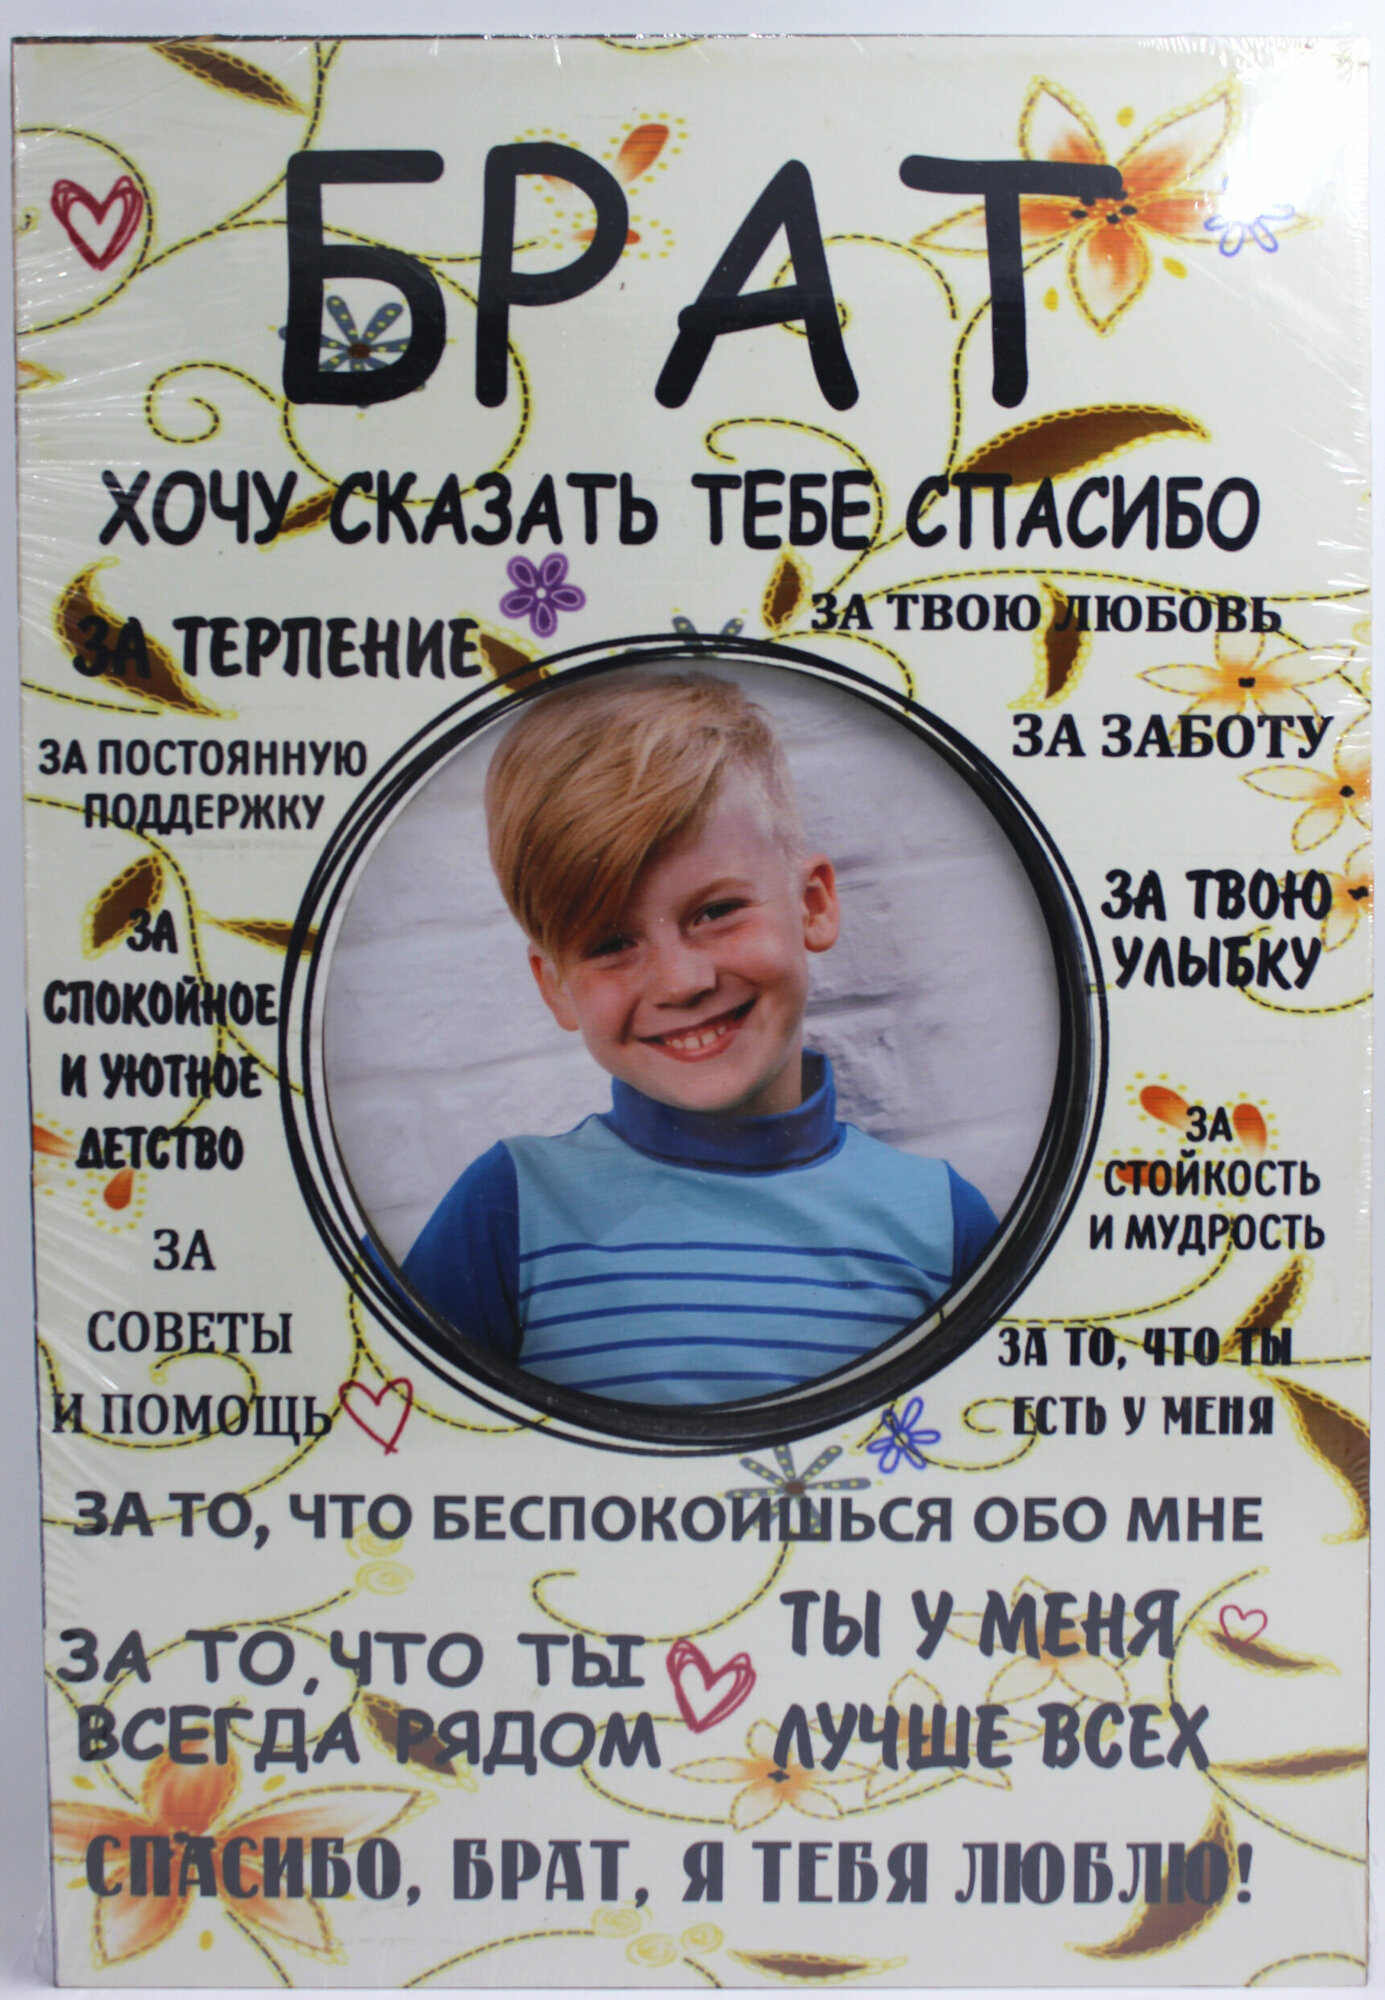 Фоторамка постер Брат с надписями, в подарок брату